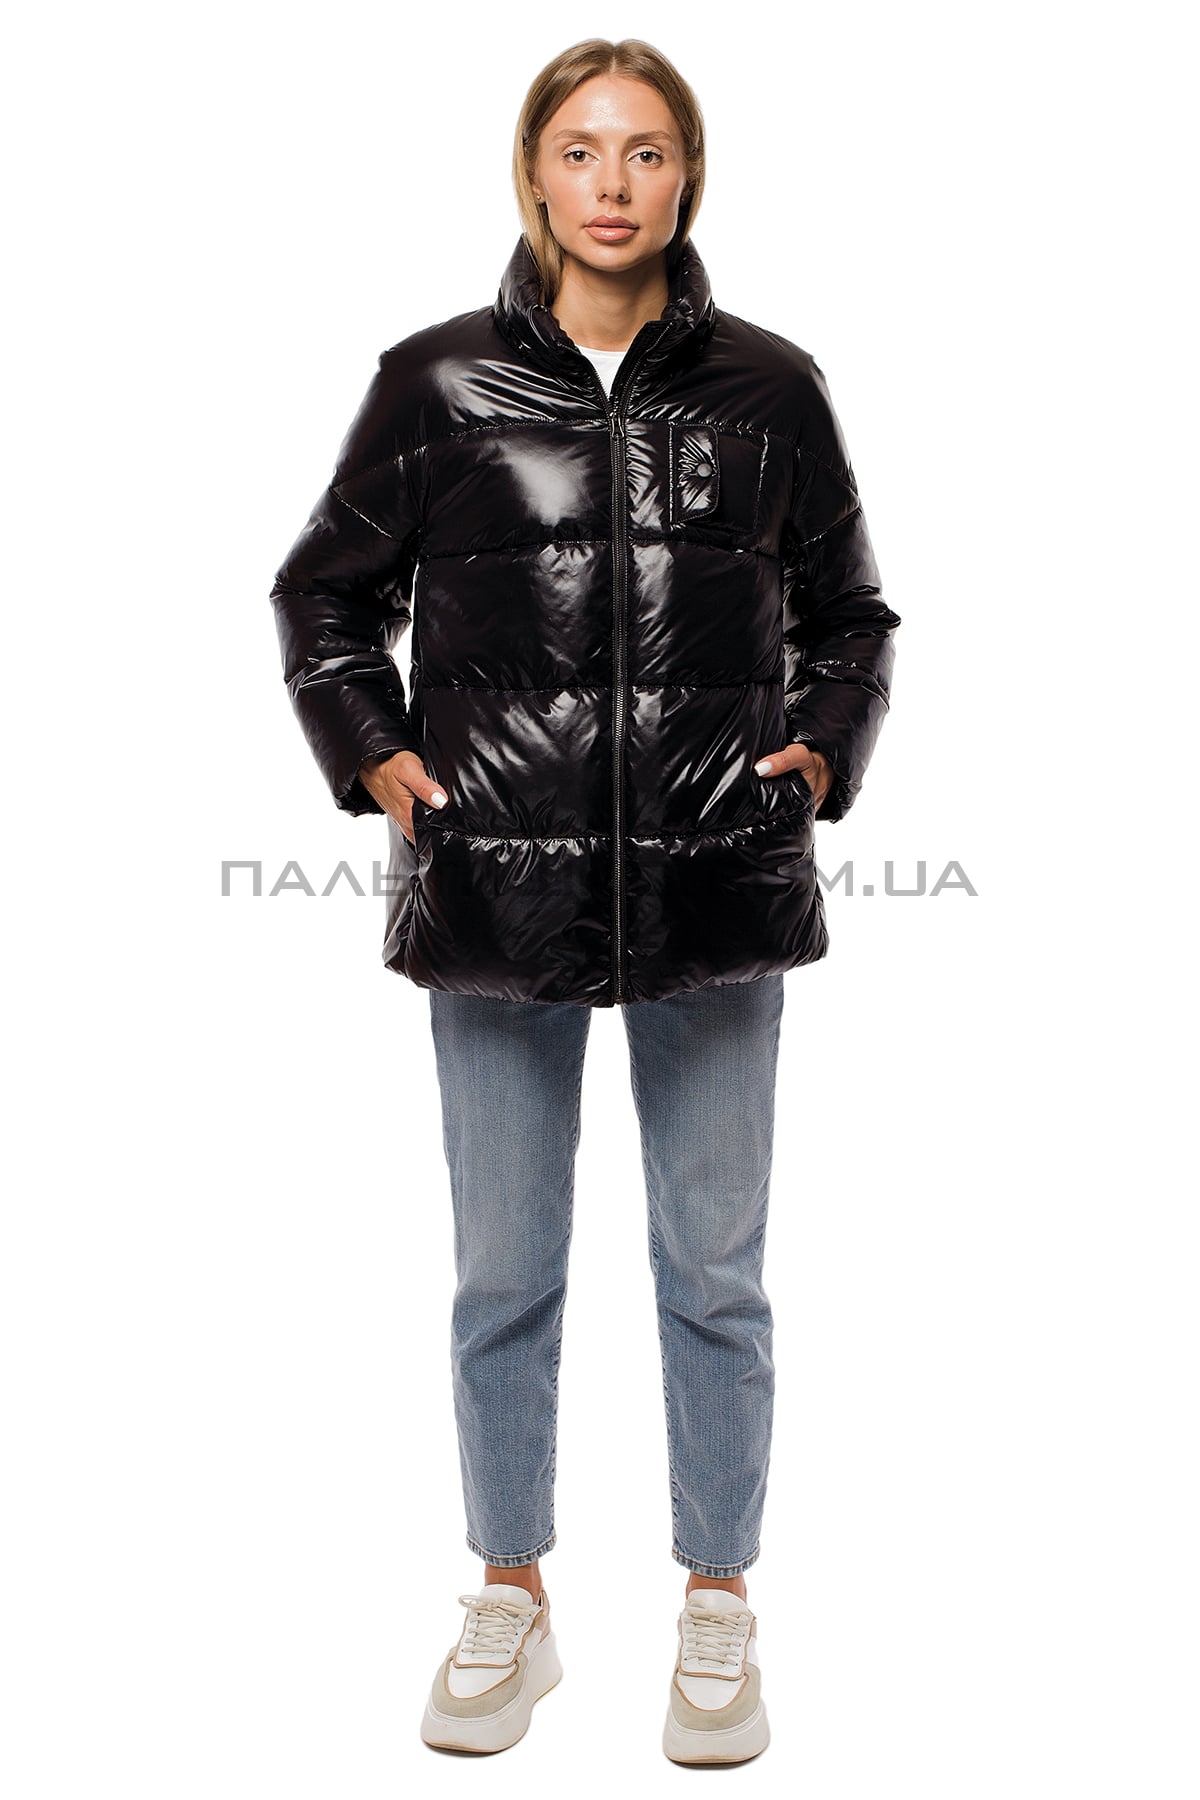  Женкская зимняя куртка черная с поясом